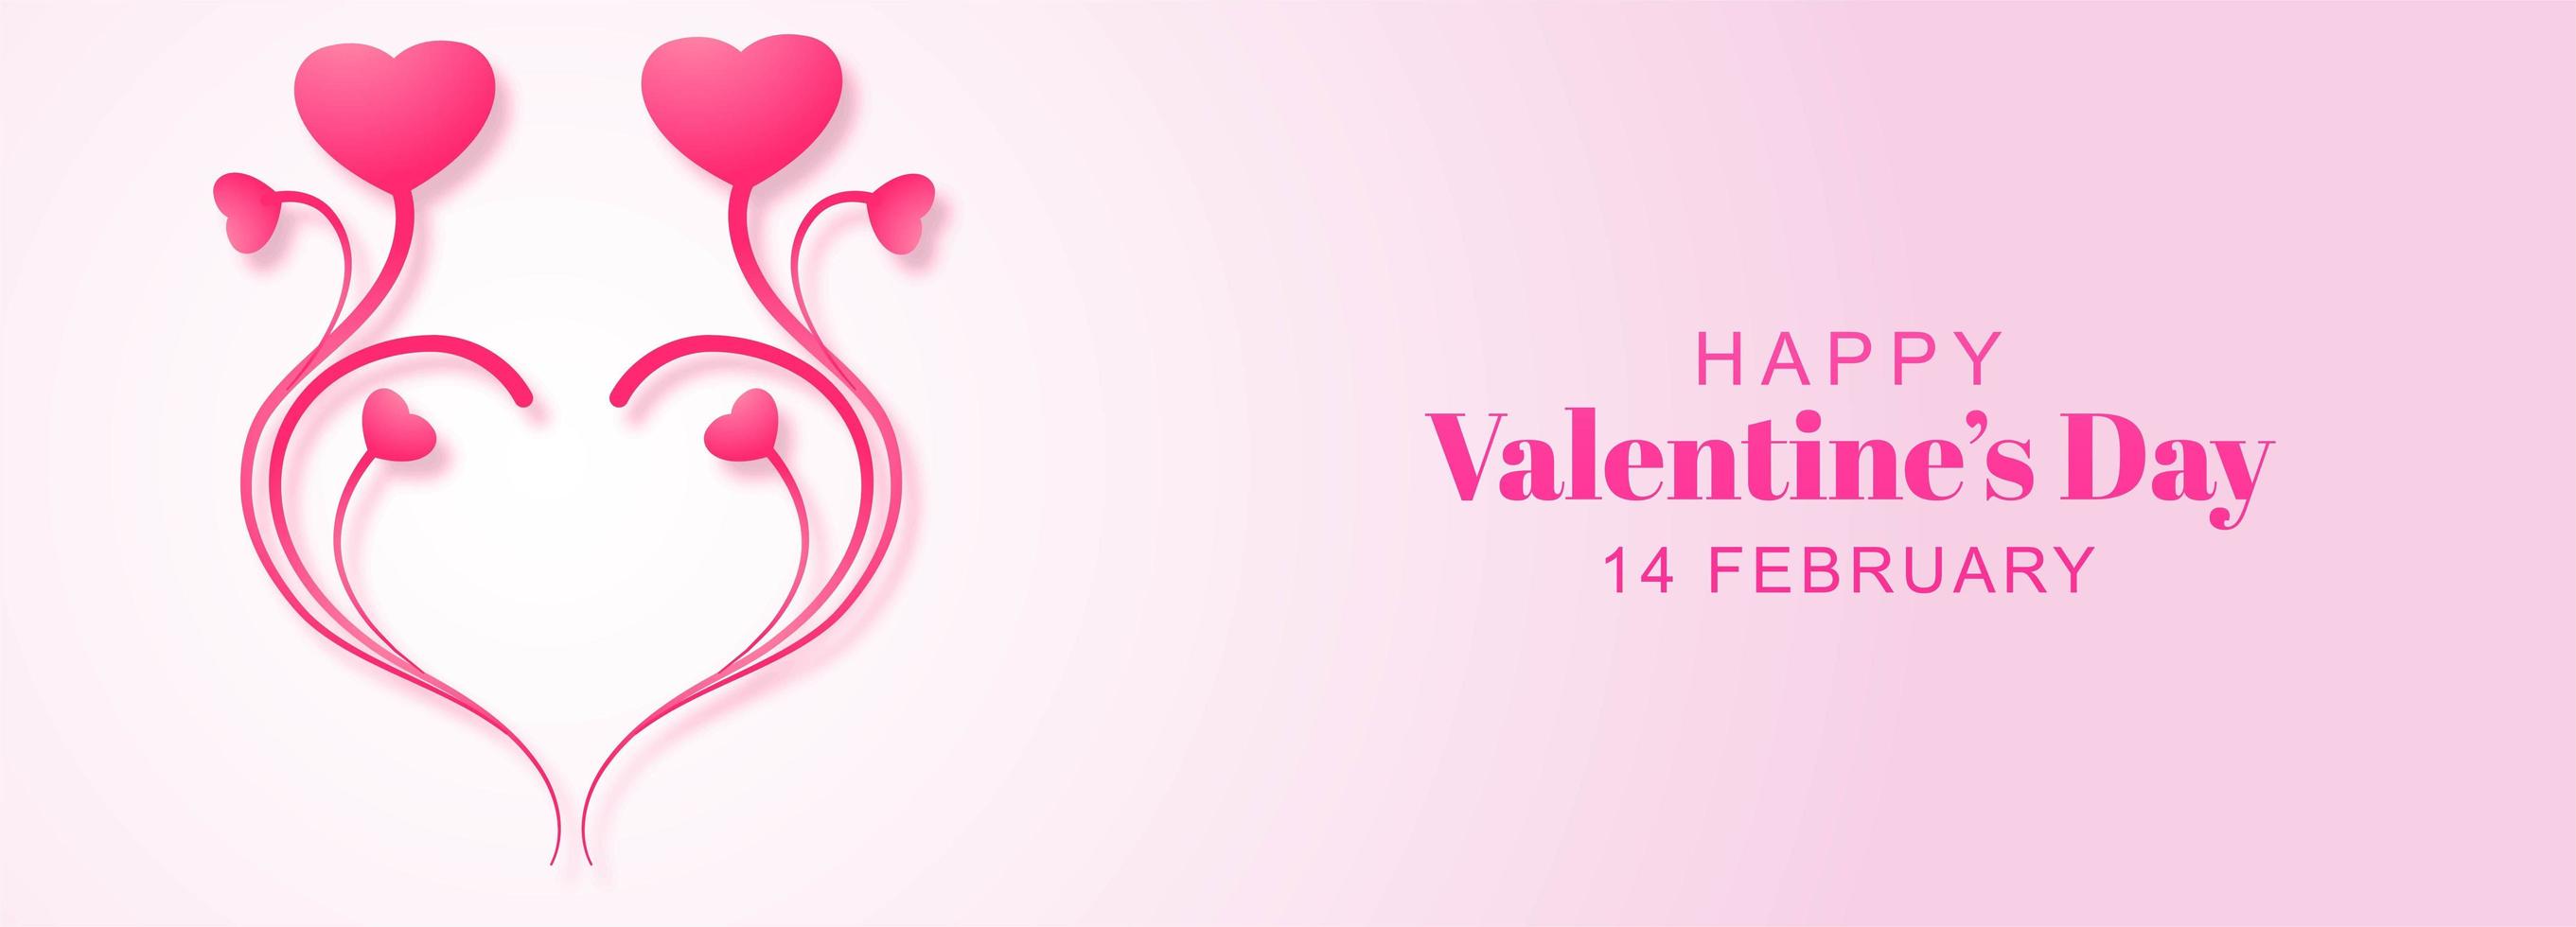 Banner de diseño floral del día de San Valentín vector